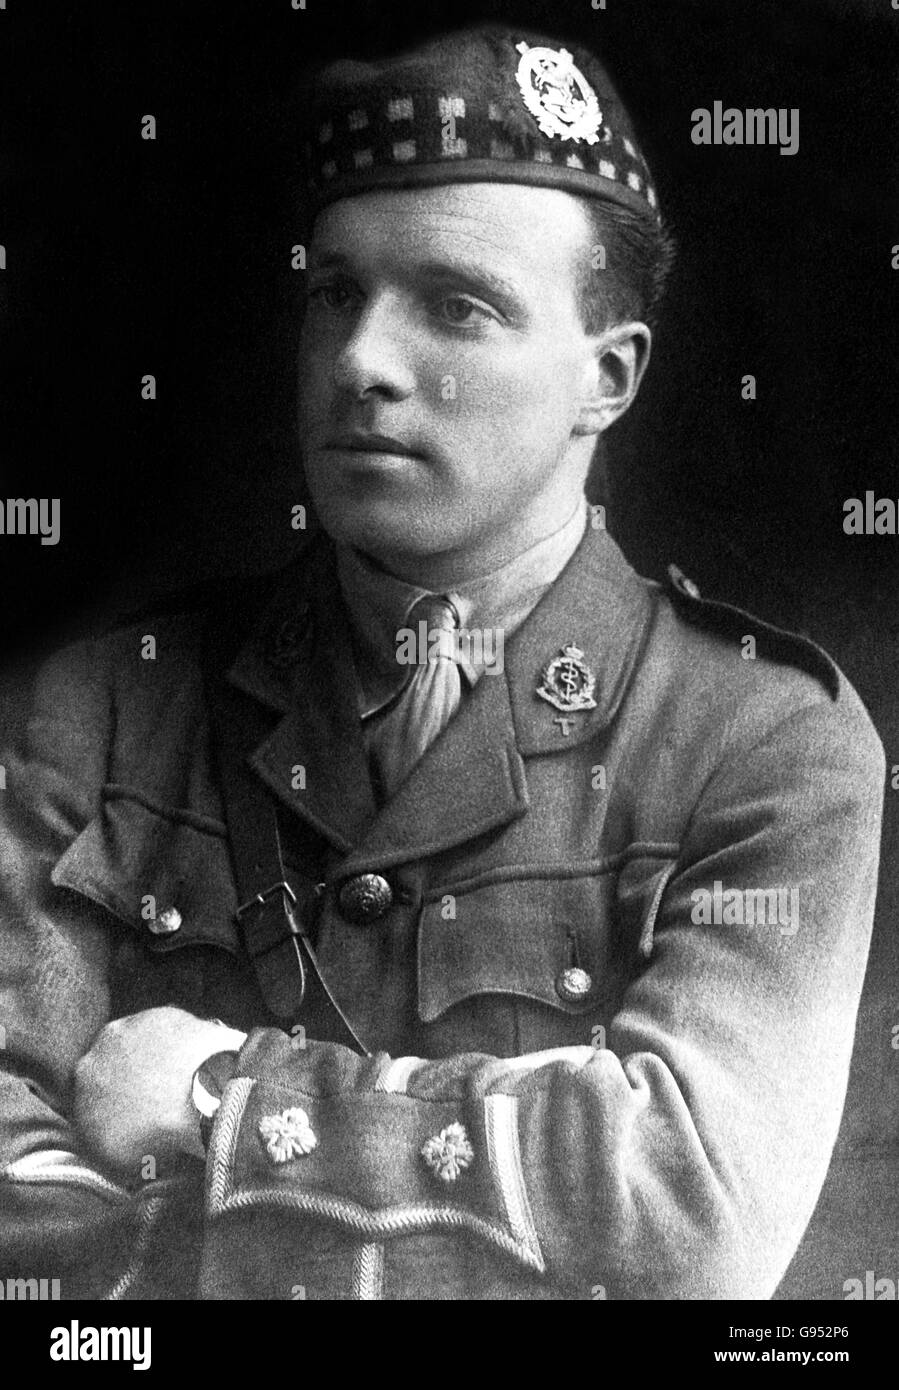 Noel Godfrey Chavasse war ein britischer Arzt und Offizier der britischen Armee, der einer von nur drei Personen ist, die zweimal ein Victoria-Kreuz erhielten. Im August 1917 wurde er bei der Royal Army Medical Corps in Aktion getötet. Stockfoto